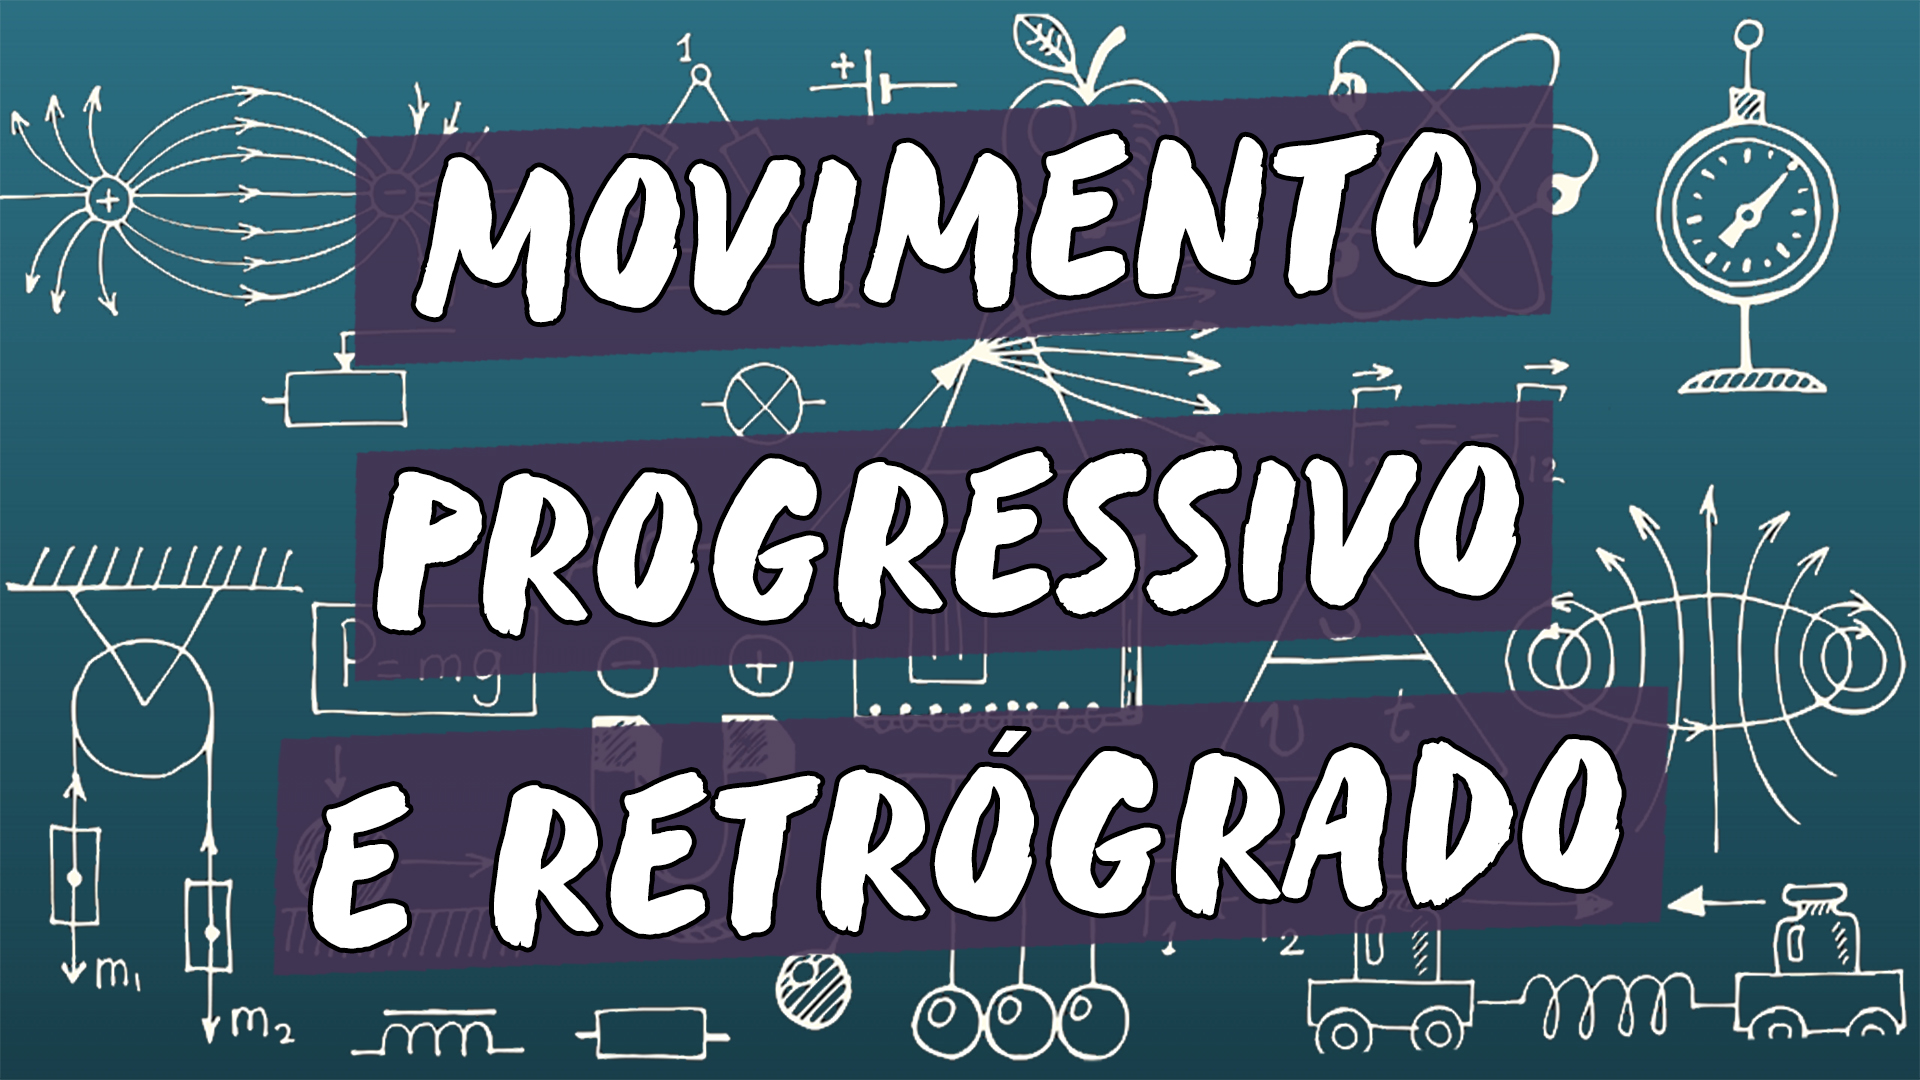 "Movimento Progressivo e Retrógrado" escrito sobre ilustração de símbolos matemáticos